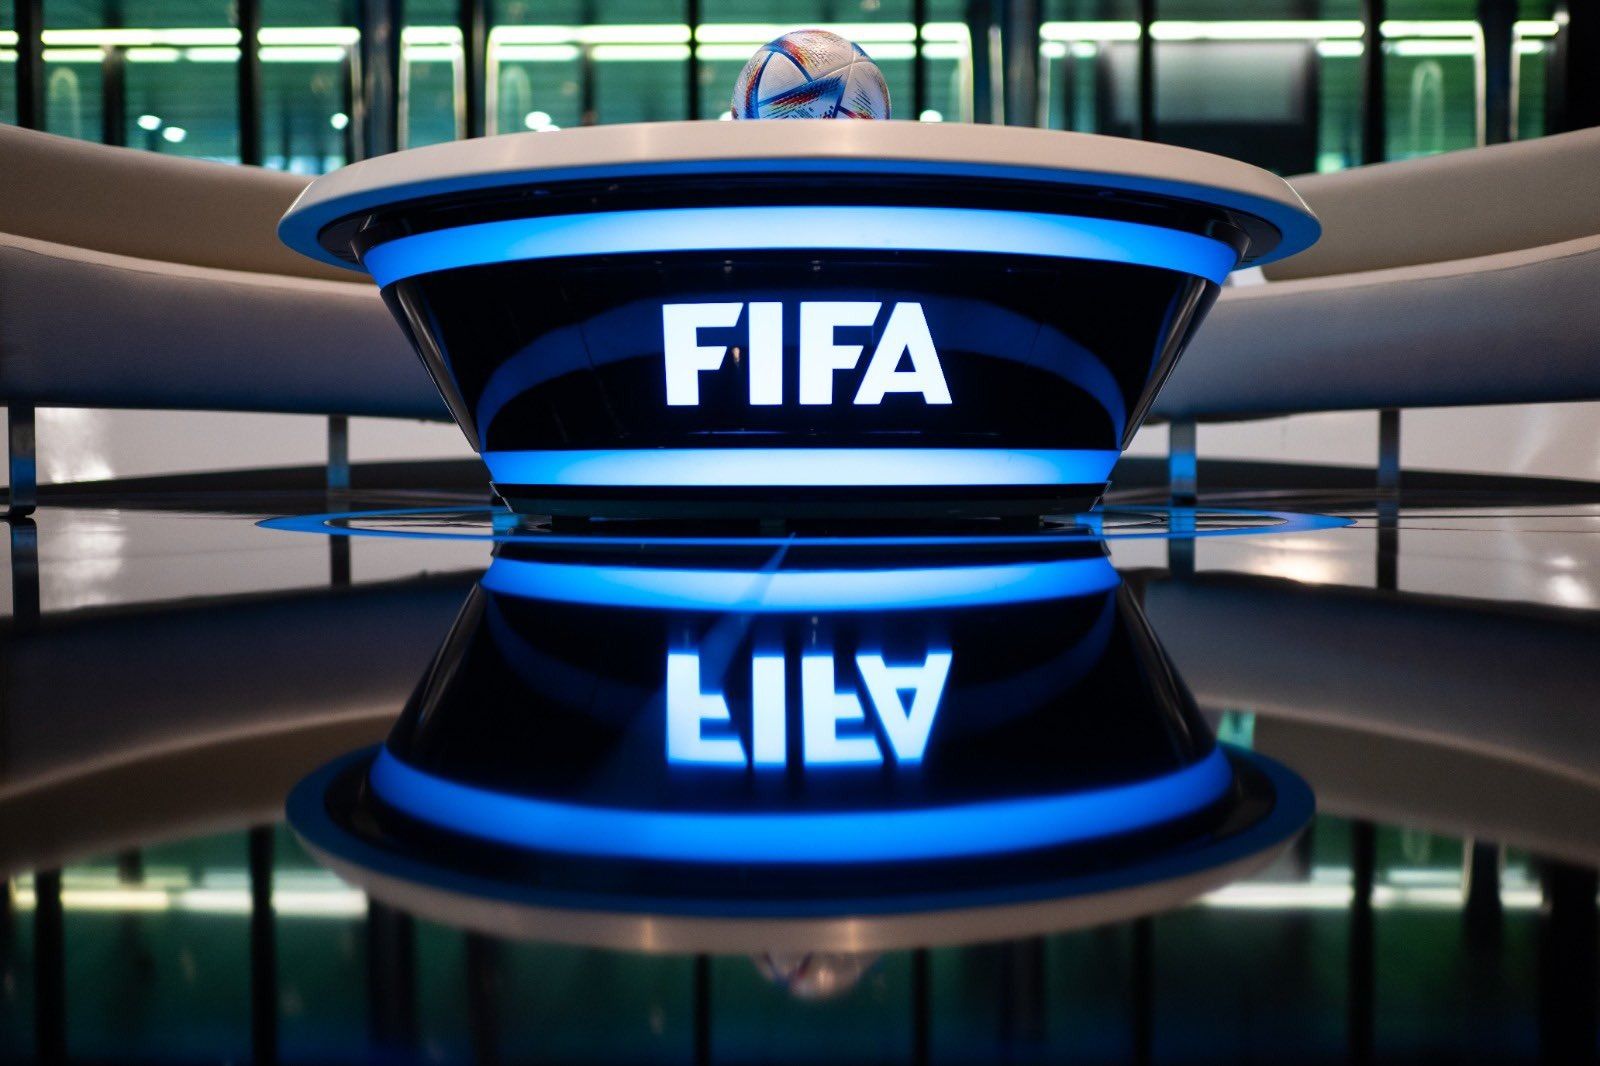 RESMI! FIFA telah Membatalkan Indonesia sebagai Tuan Rumah Piala Dunia U-20